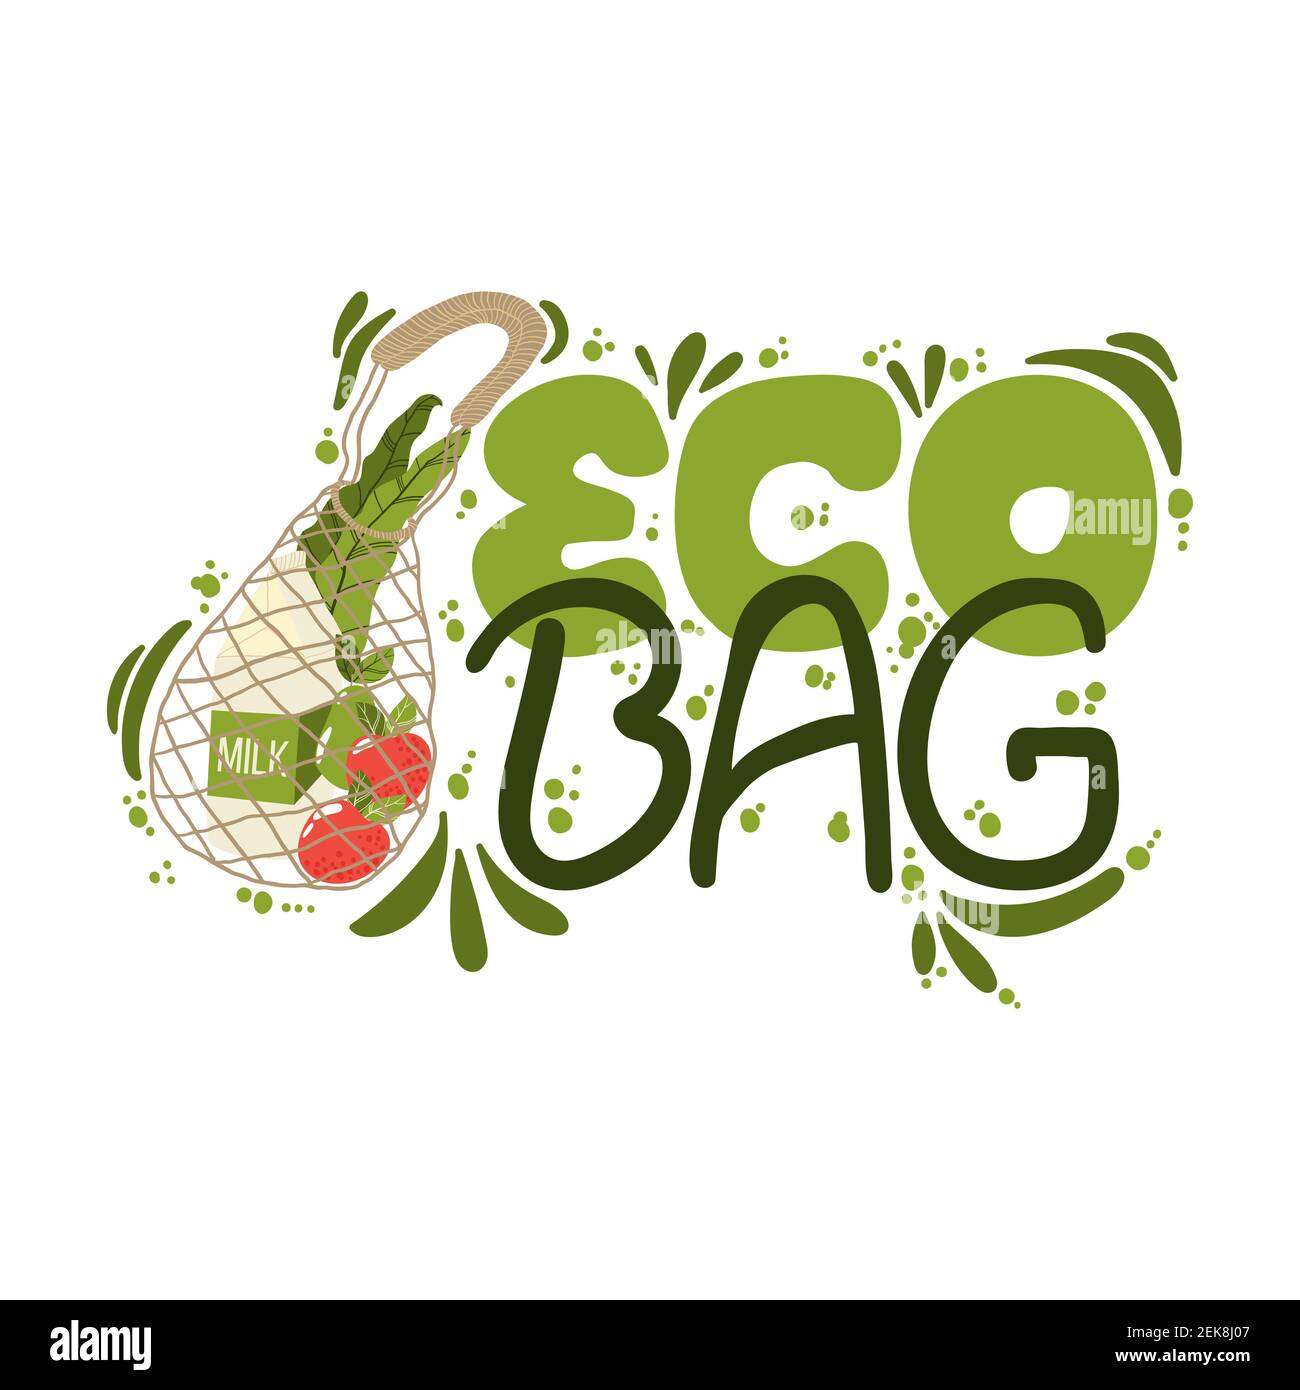 Eco borsa slogan scritto a mano. Composizioni con scritte e illustrazione di stile di vita senza sprechi. Tipografia moderna per scegliere la vita eco-friendly Illustrazione Vettoriale